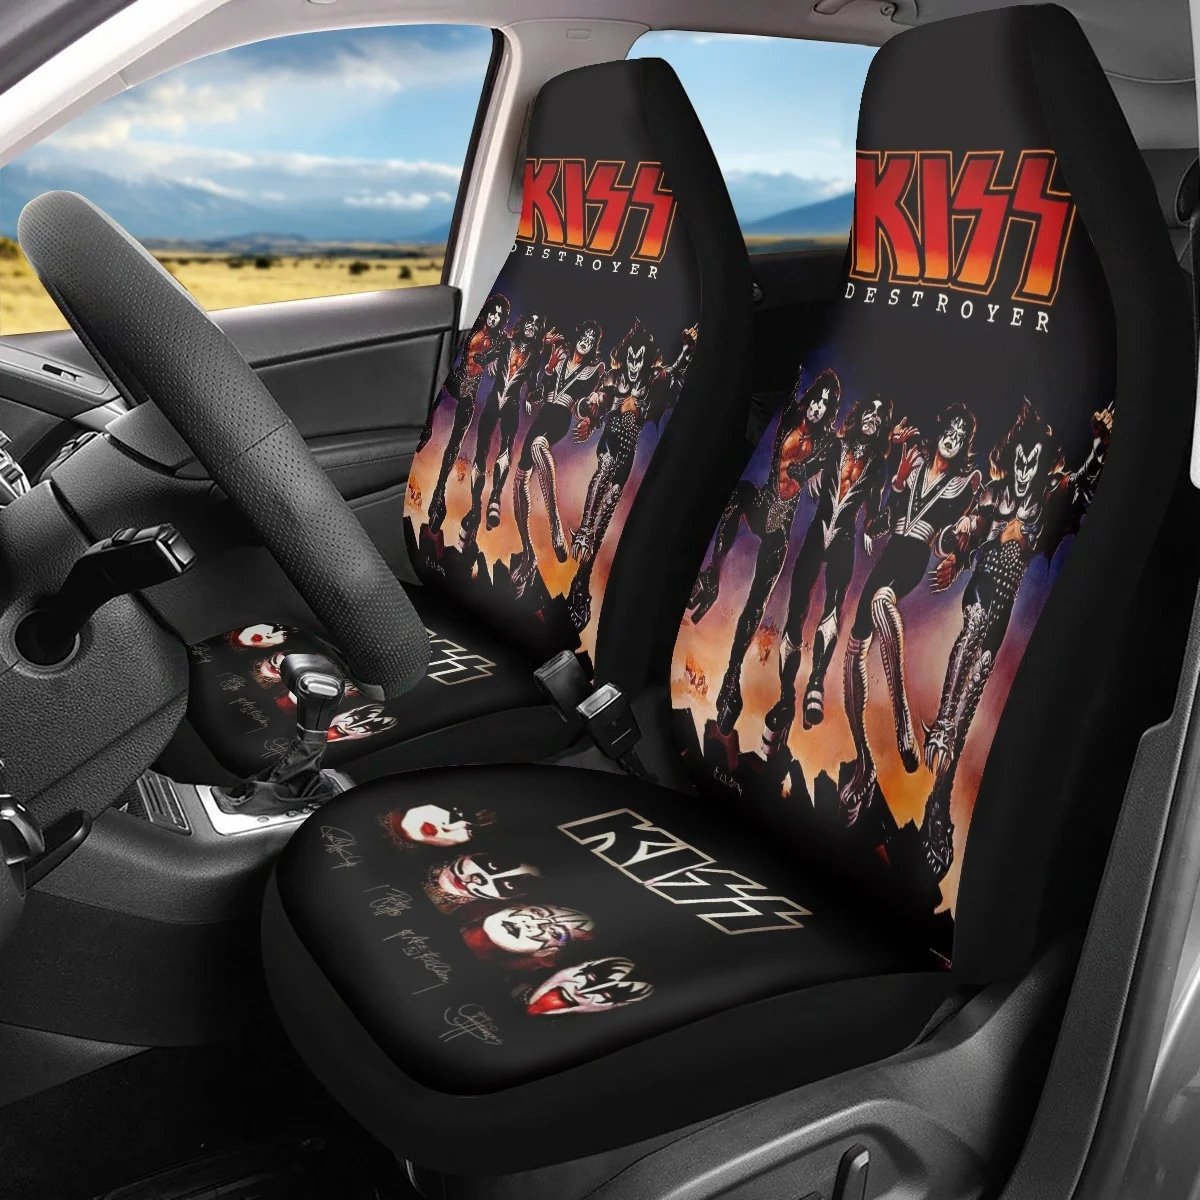 

Чехлы на сиденья автомобиля Kiss Band, защитные универсальные накидки на передние сиденья автомобиля, аксессуары для салона автомобиля, грузовика, внедорожника, фургона